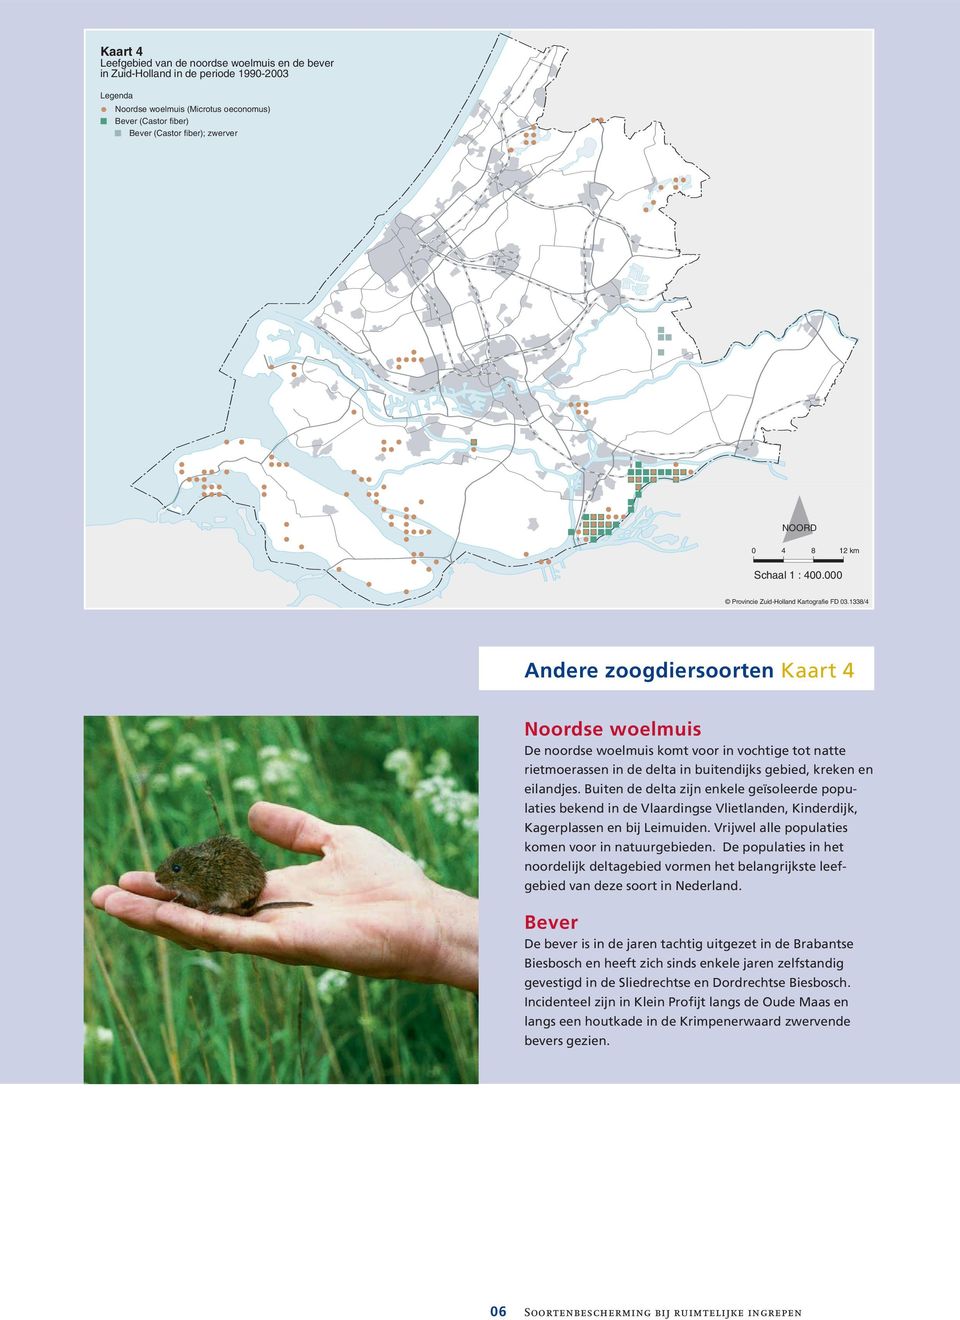 1338/4 Andere zoogdiersoorten Kaart 4 Noordse woelmuis De noordse woelmuis komt voor in vochtige tot natte rietmoerassen in de delta in buitendijks gebied, kreken en eilandjes.